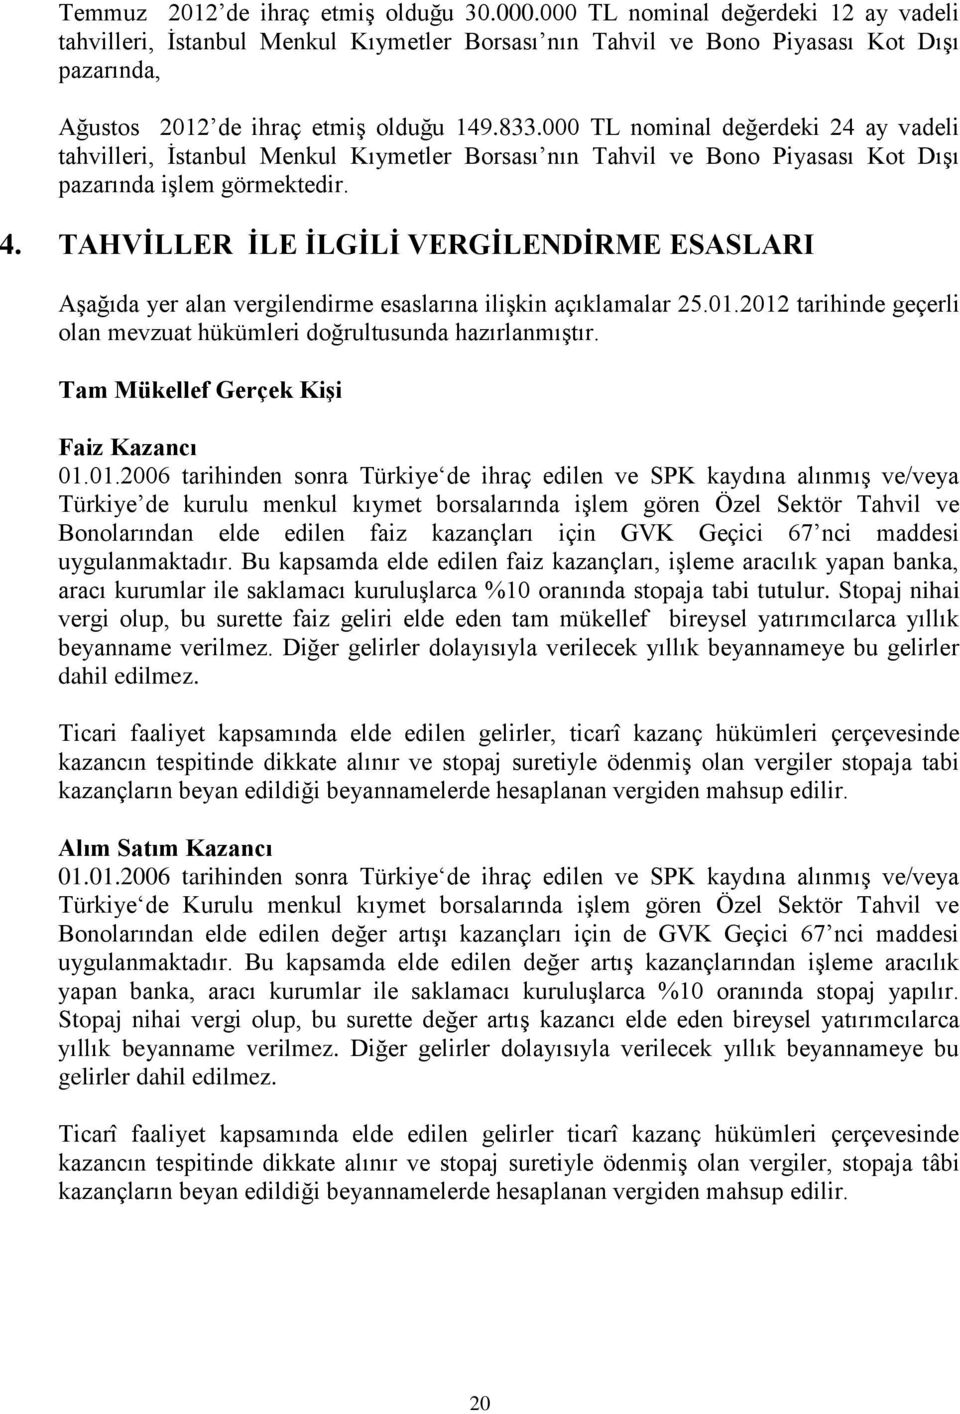 000 TL nominal değerdeki 24 ay vadeli tahvilleri, İstanbul Menkul Kıymetler Borsası nın Tahvil ve Bono Piyasası Kot Dışı pazarında işlem görmektedir. 4.